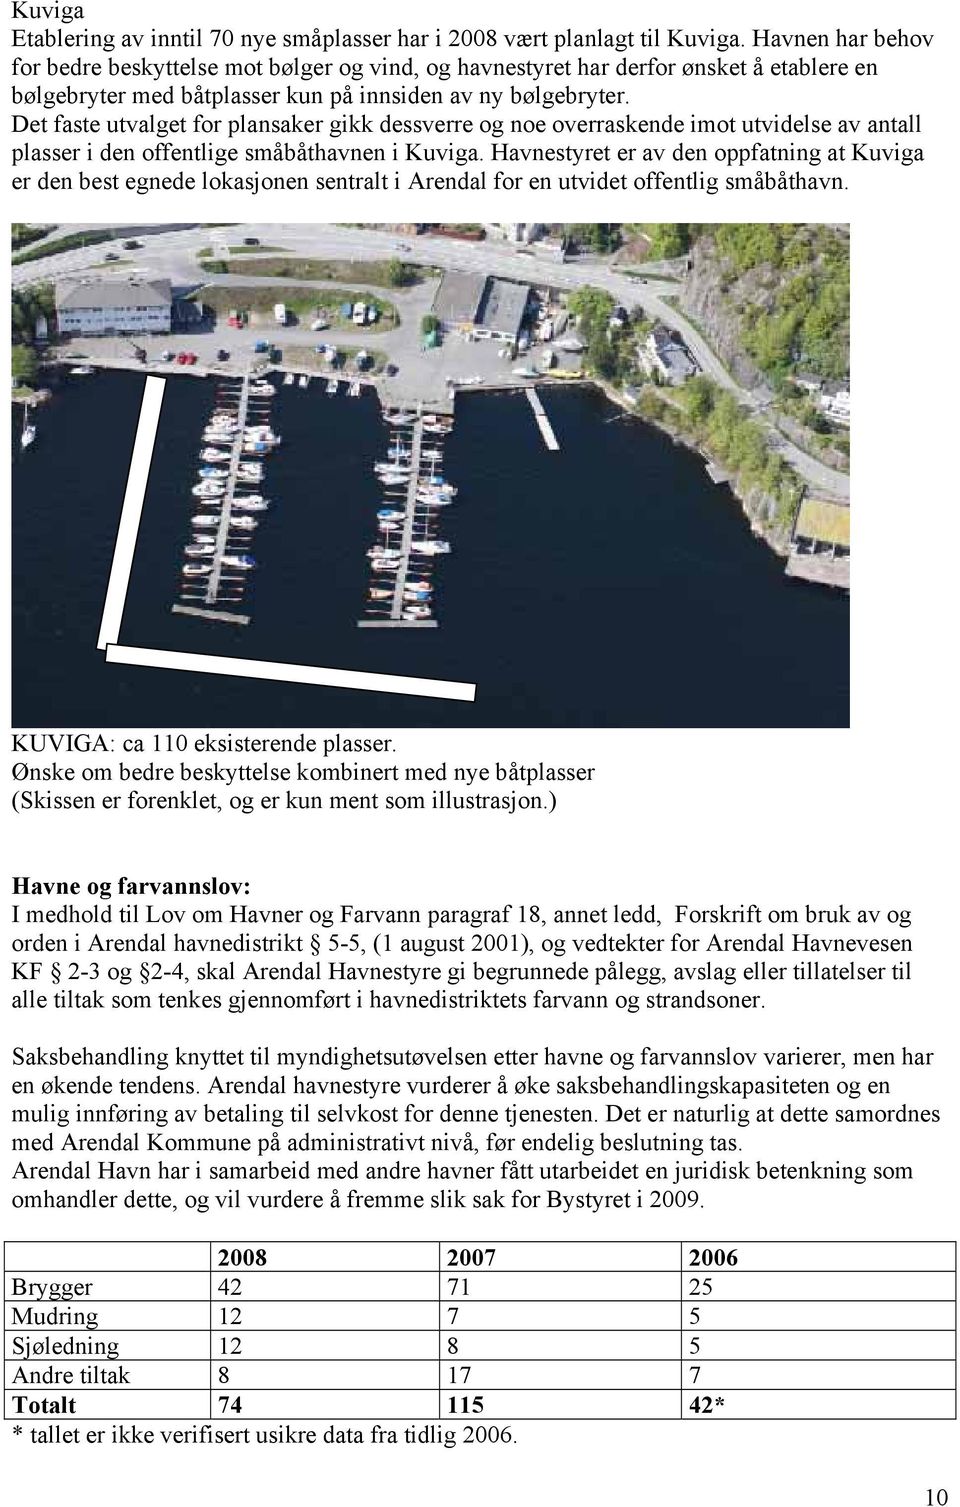 Det faste utvalget for plansaker gikk dessverre og noe overraskende imot utvidelse av antall plasser i den offentlige småbåthavnen i Kuviga.